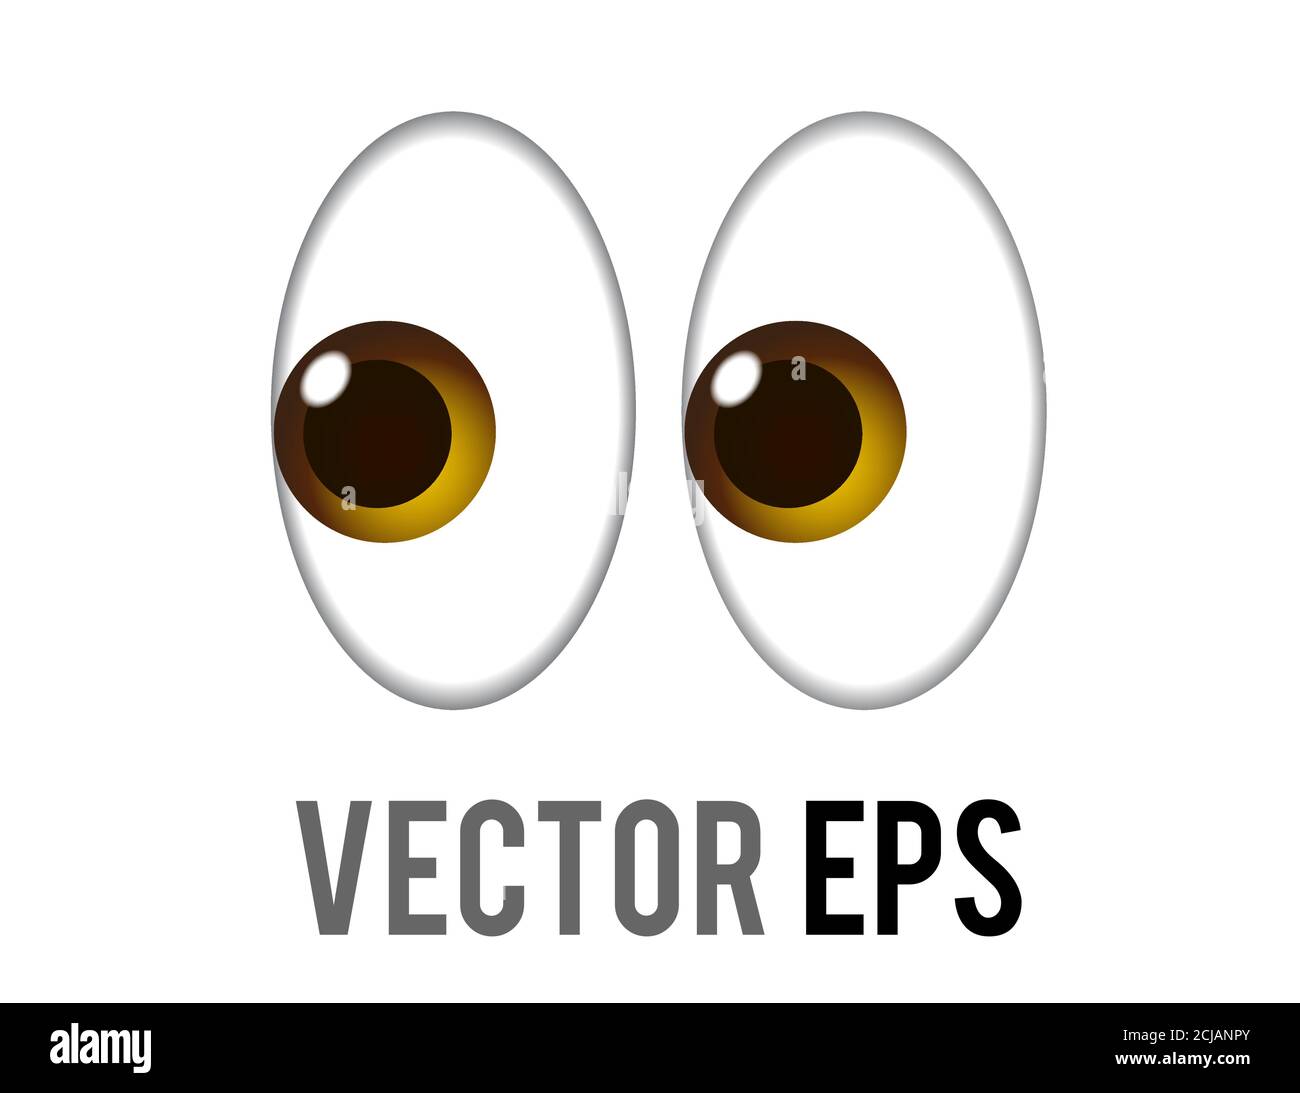 La paire de vecteurs isolés de l'icône des yeux pervy ou cravtés, en regardant légèrement vers la gauche Illustration de Vecteur